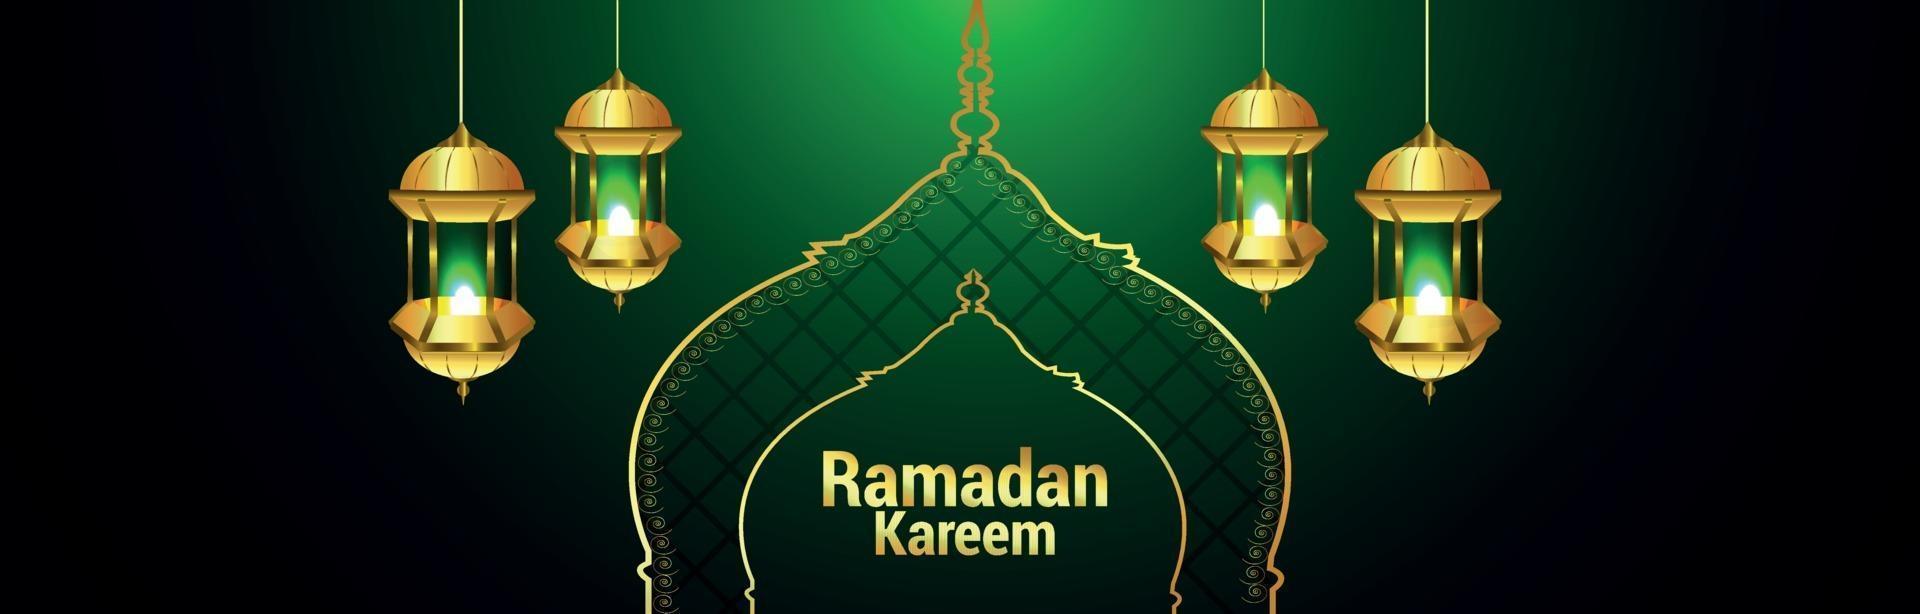 banner ou cabeçalho ramadan kareem com lanterna dourada vetor